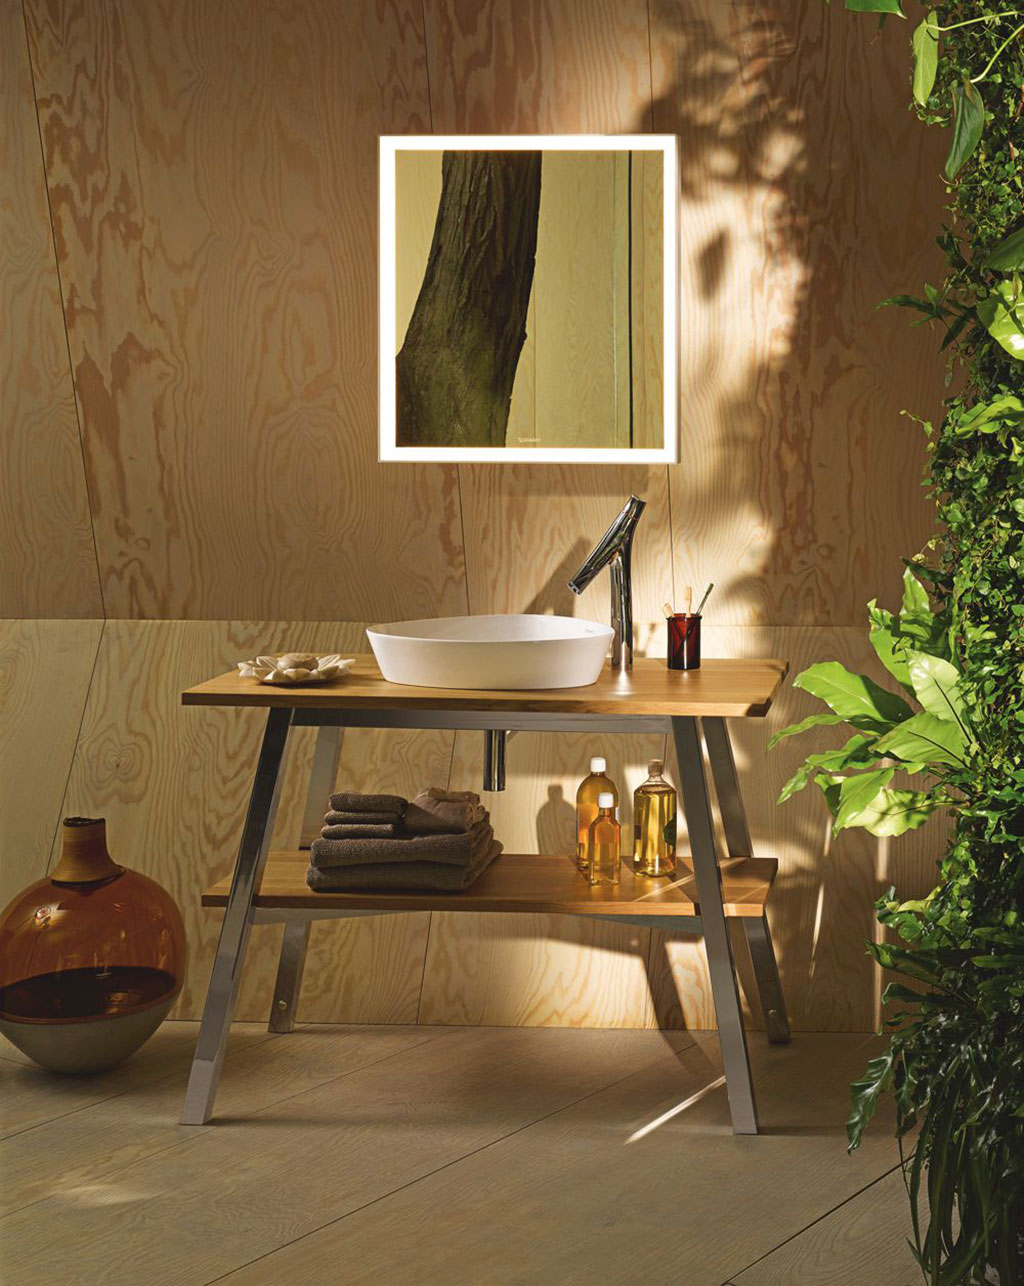 Breng de natuur in de badkamer | Stek Magazine